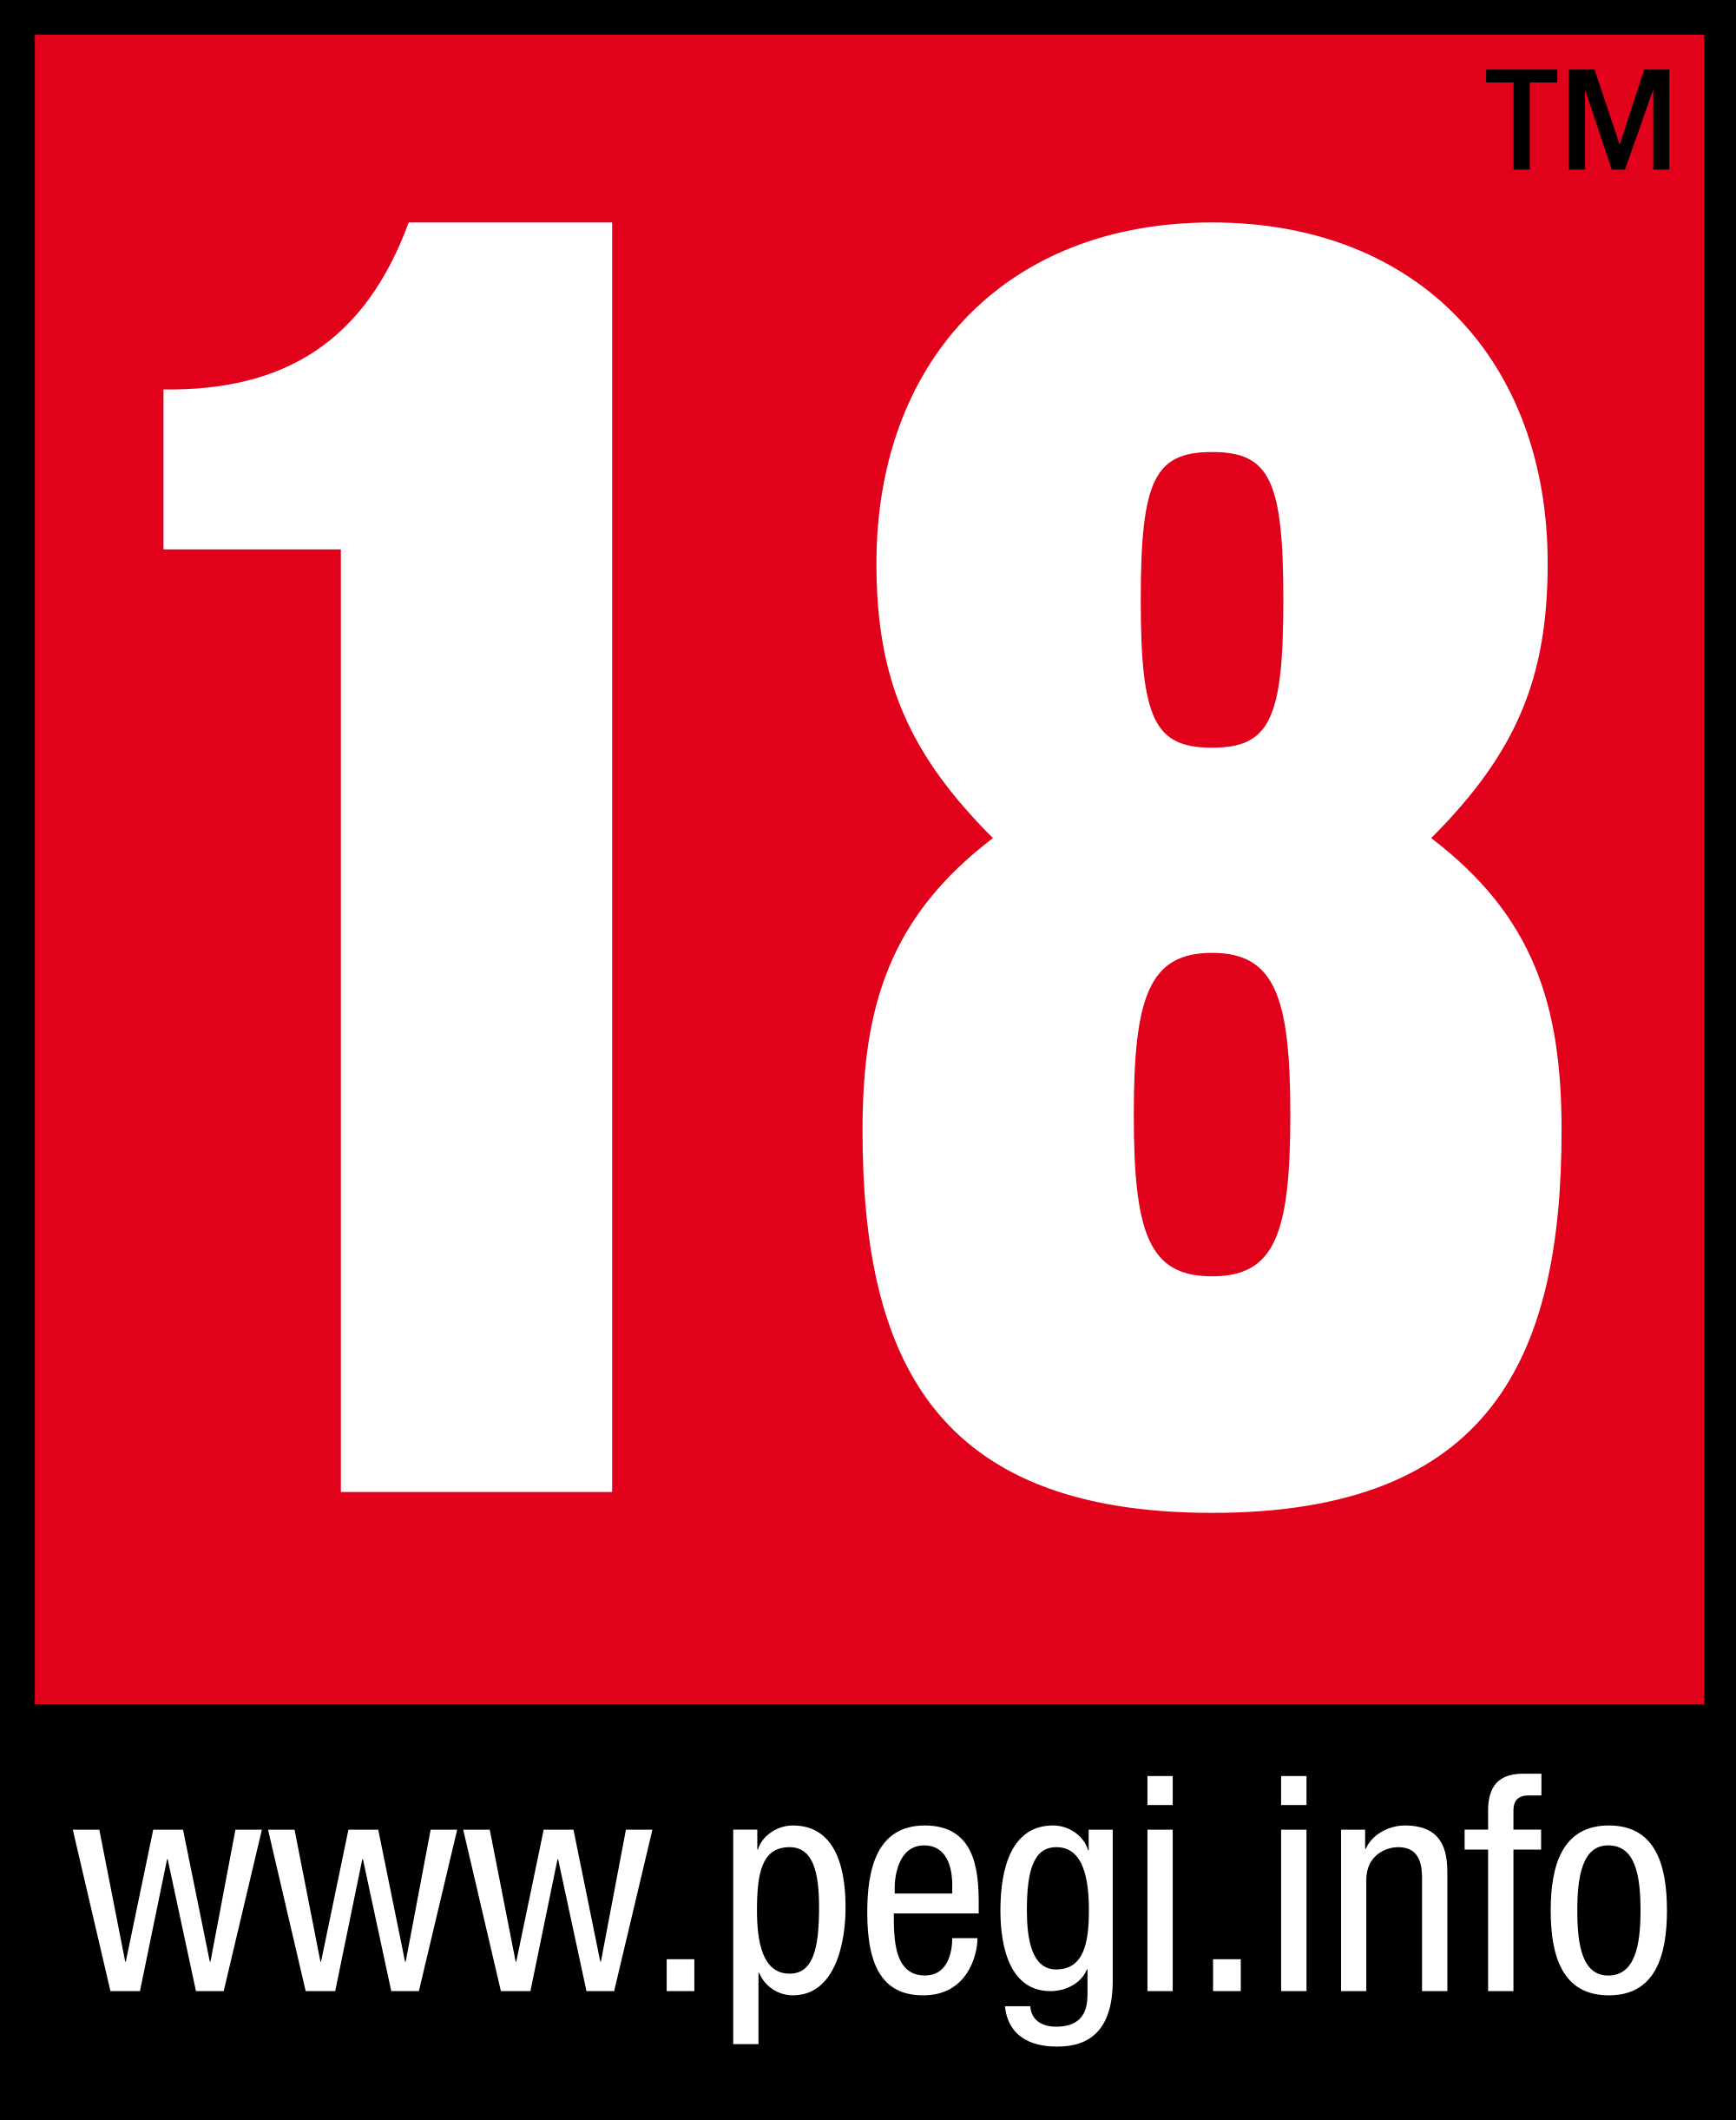 PEGI - 18 (Europe)